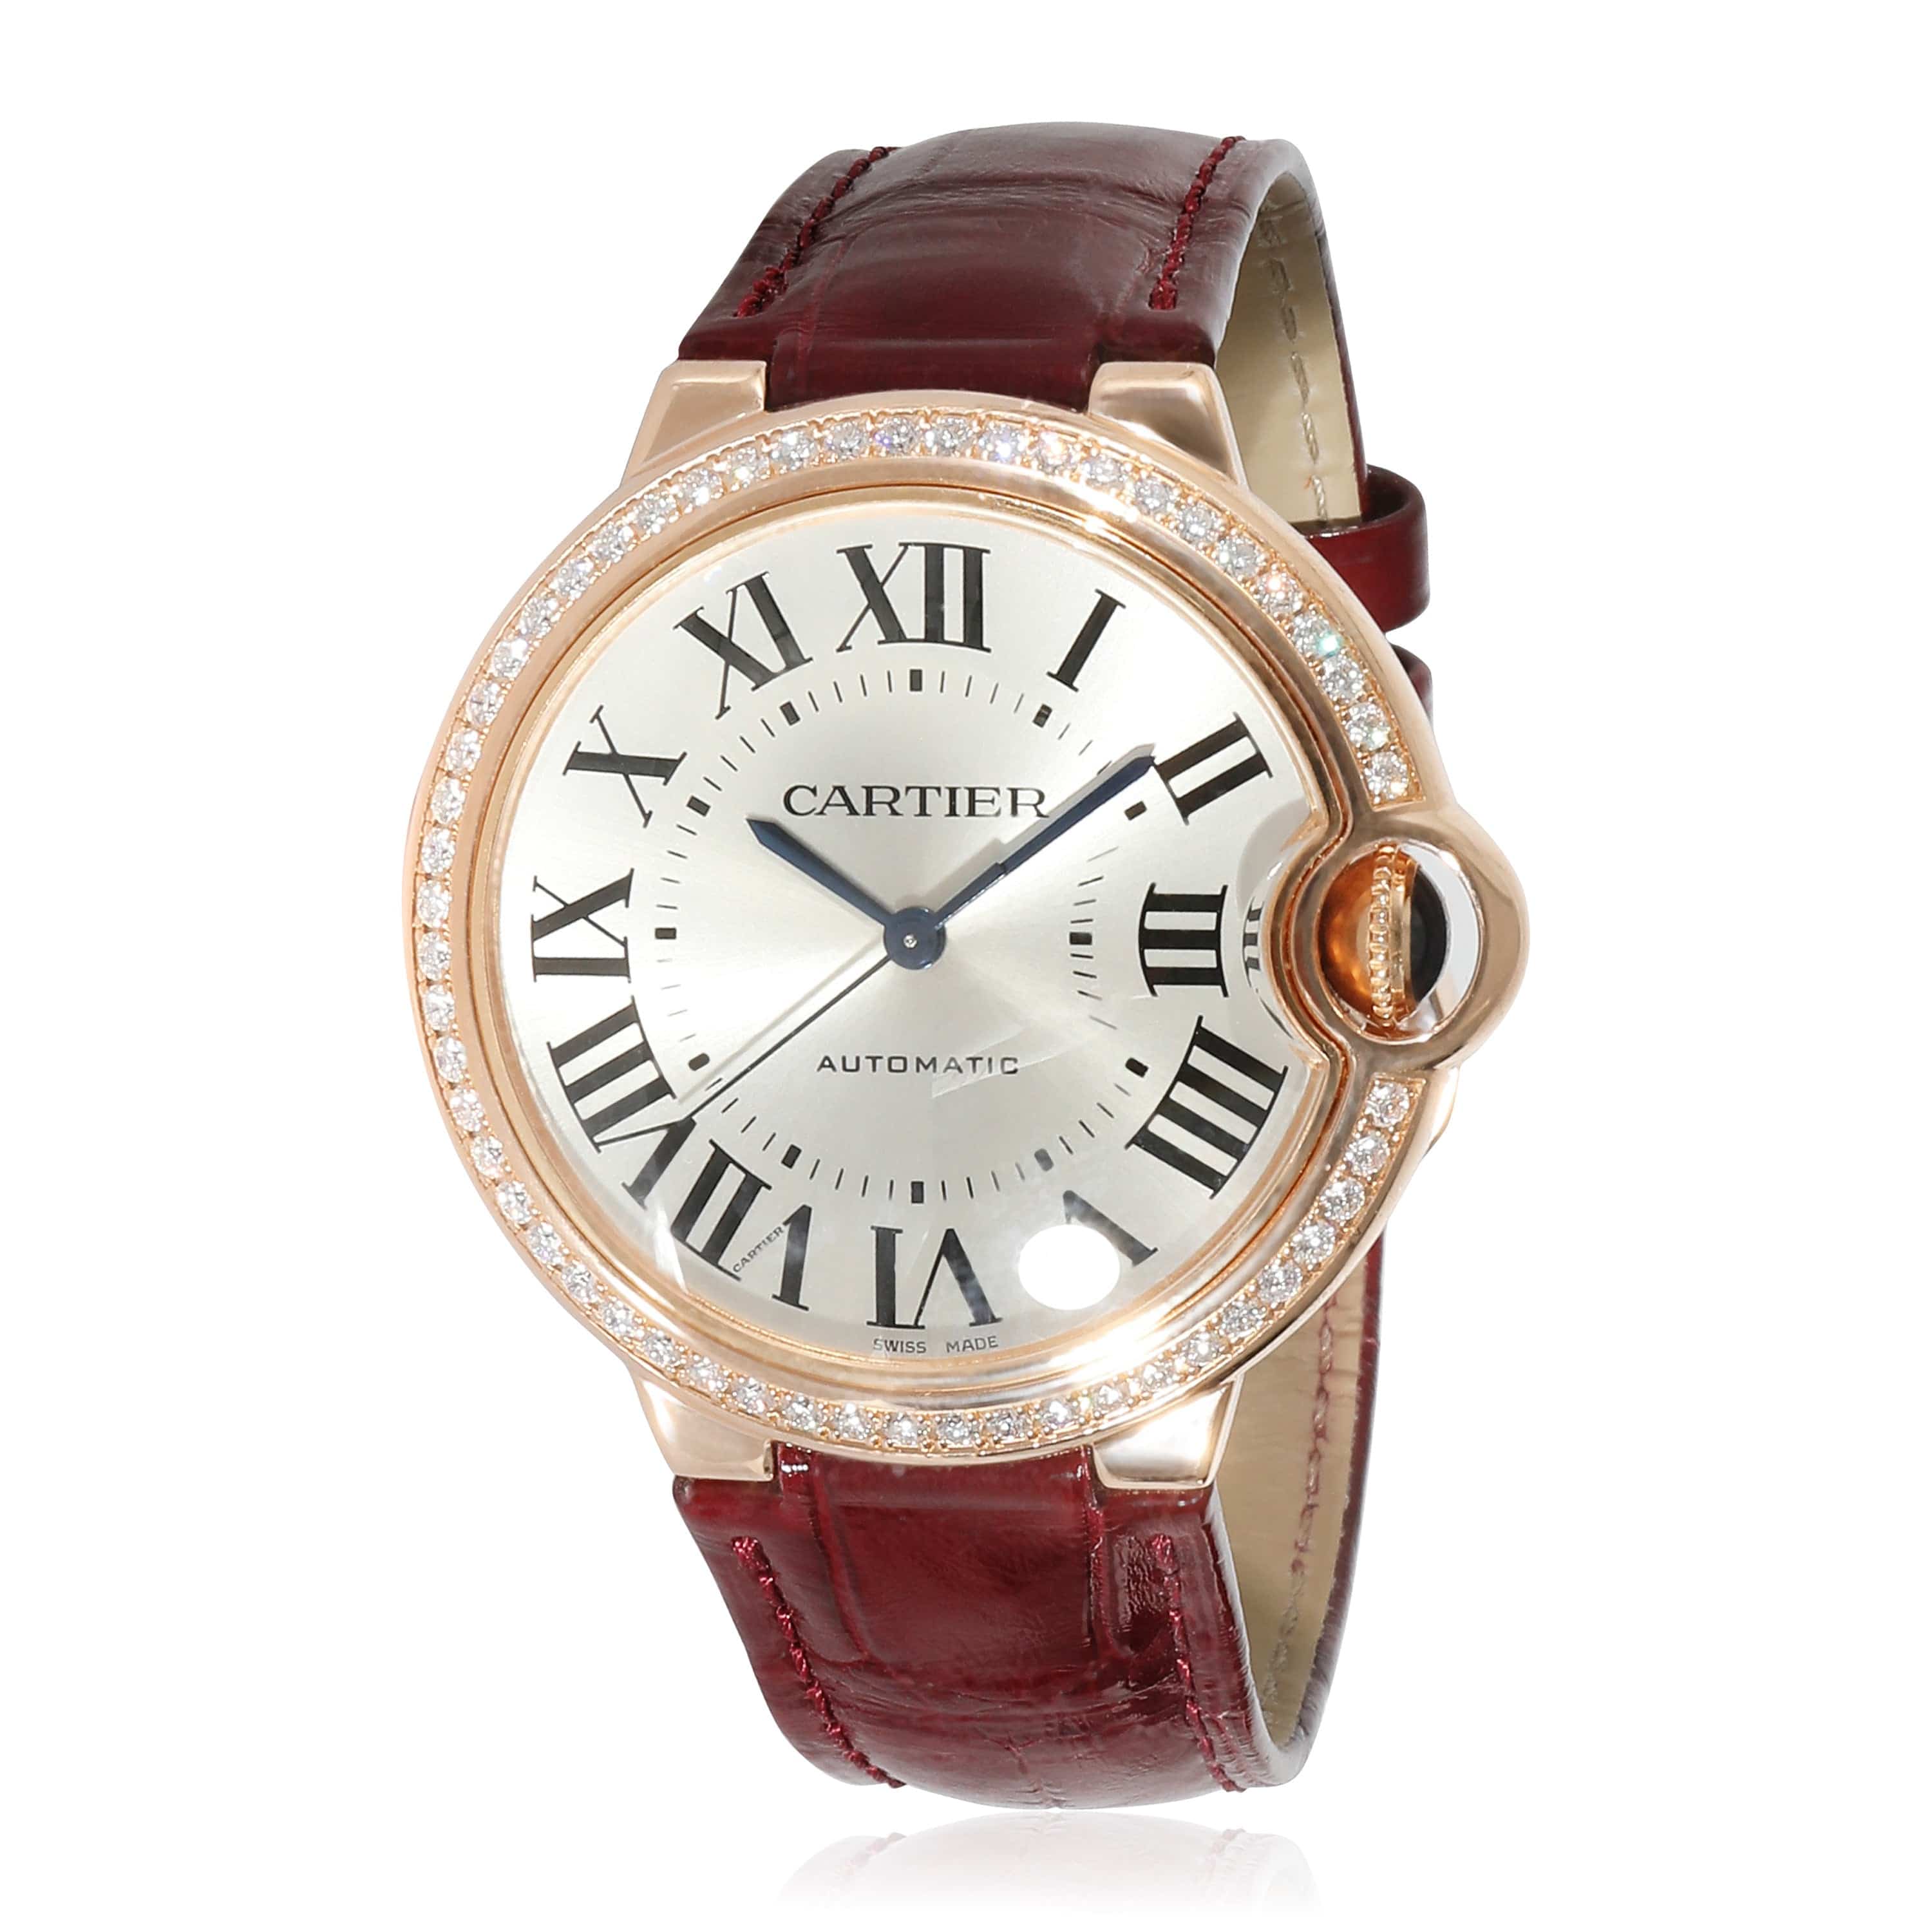 Cartier Cartier Ballon Bleu WJBB0034 Unisex Watch in 18kt Rose Gold